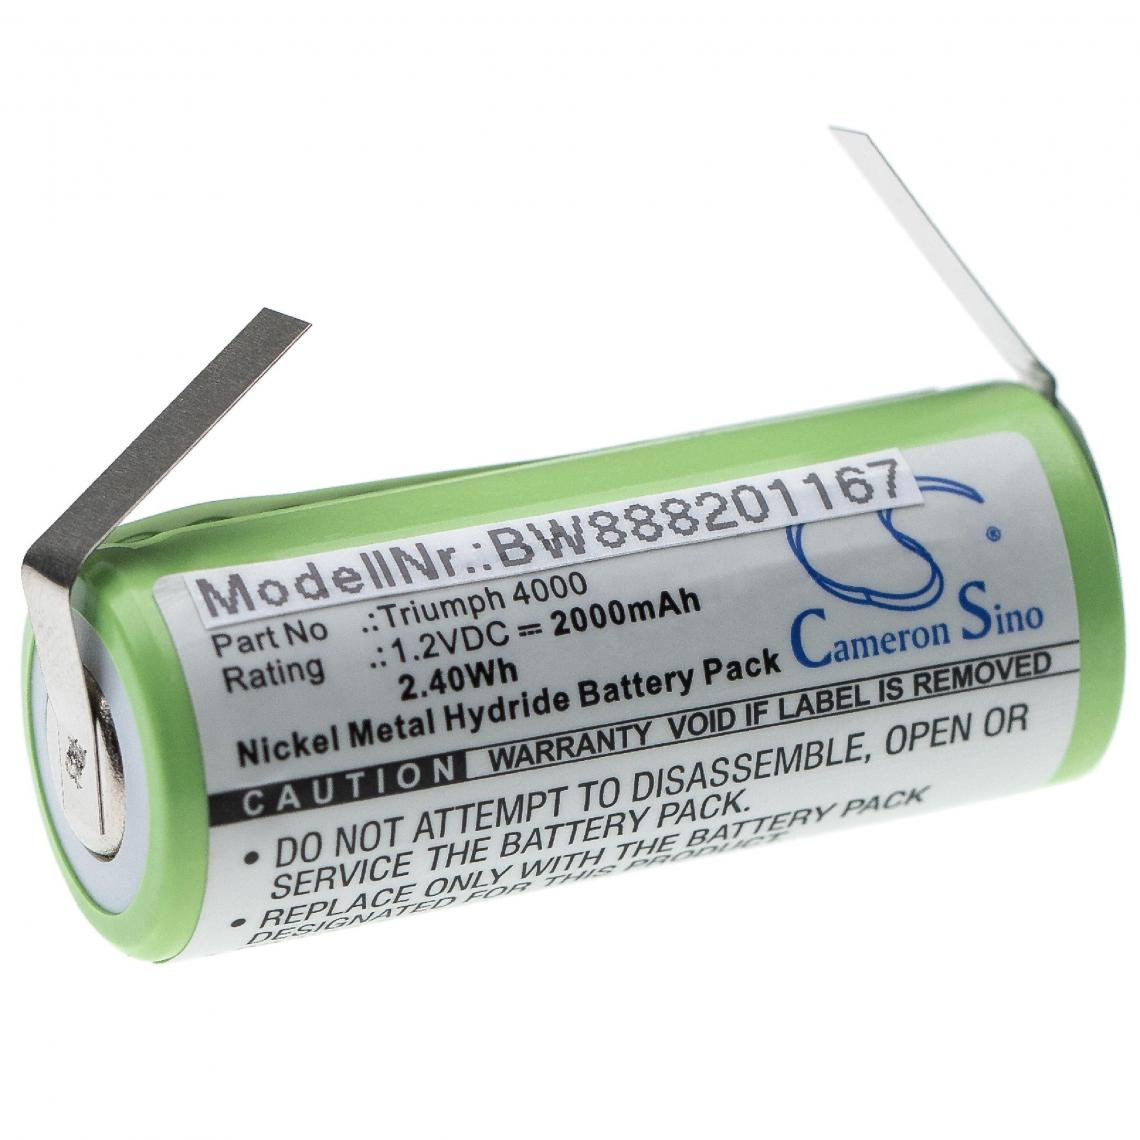 Vhbw - vhbw Batterie remplacement pour Oral-B 3745, 3761, 3762 pour brosse à dents électrique (2000mAh, 1,2V, NiMH) - Brosses